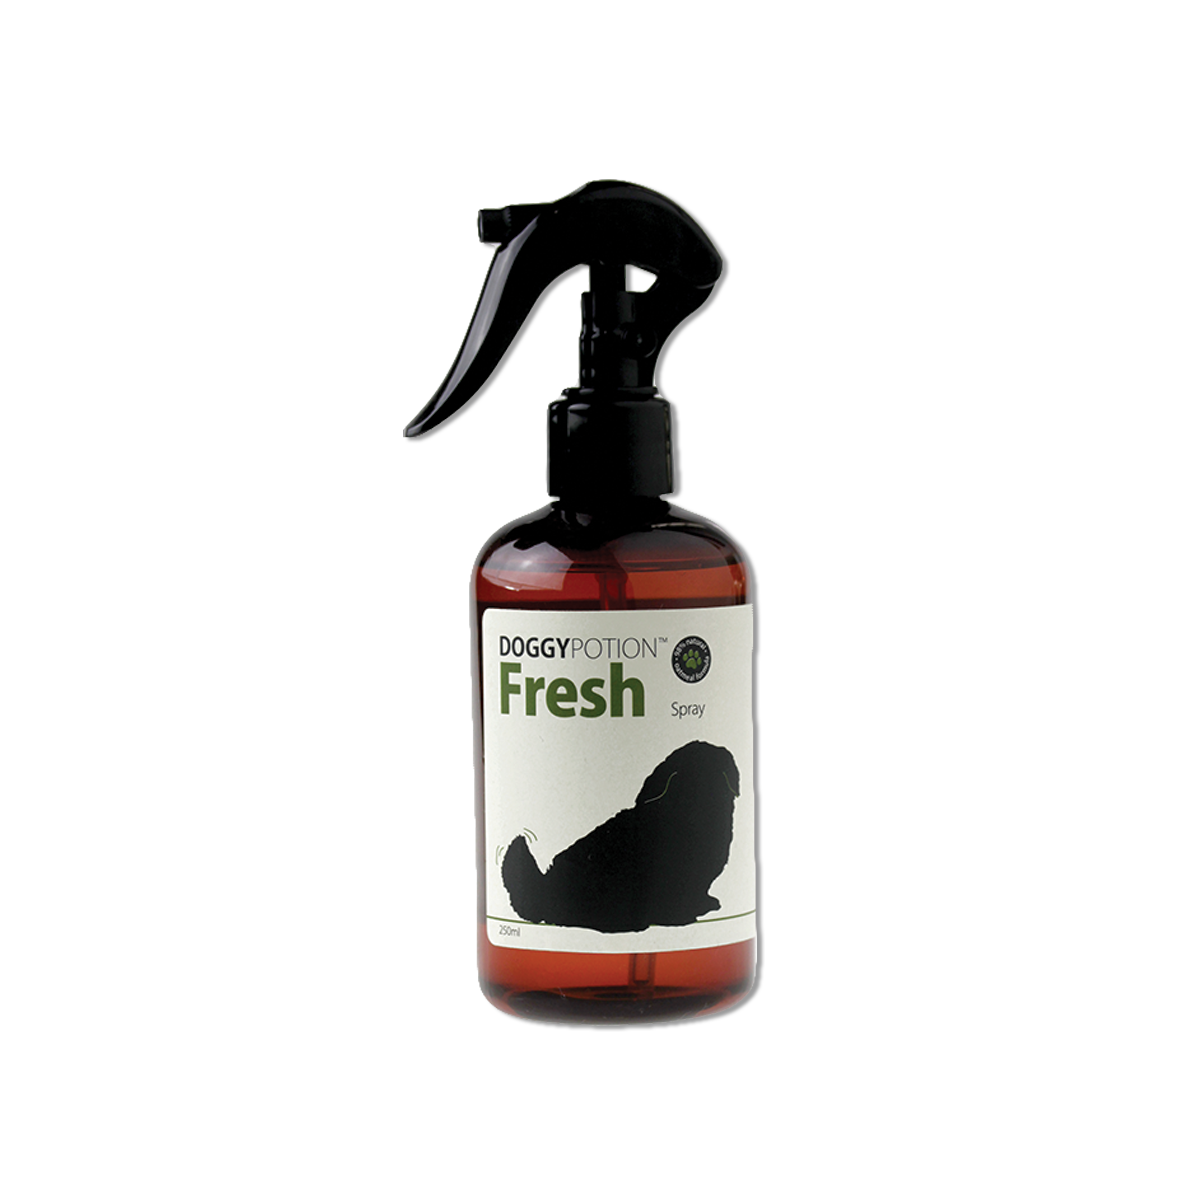 Doggy Potion Fresh Spray ด็อกกี้โพชั่น สเปรย์บำรุงขนสูตรเฟรช ขนาด 250 มล.